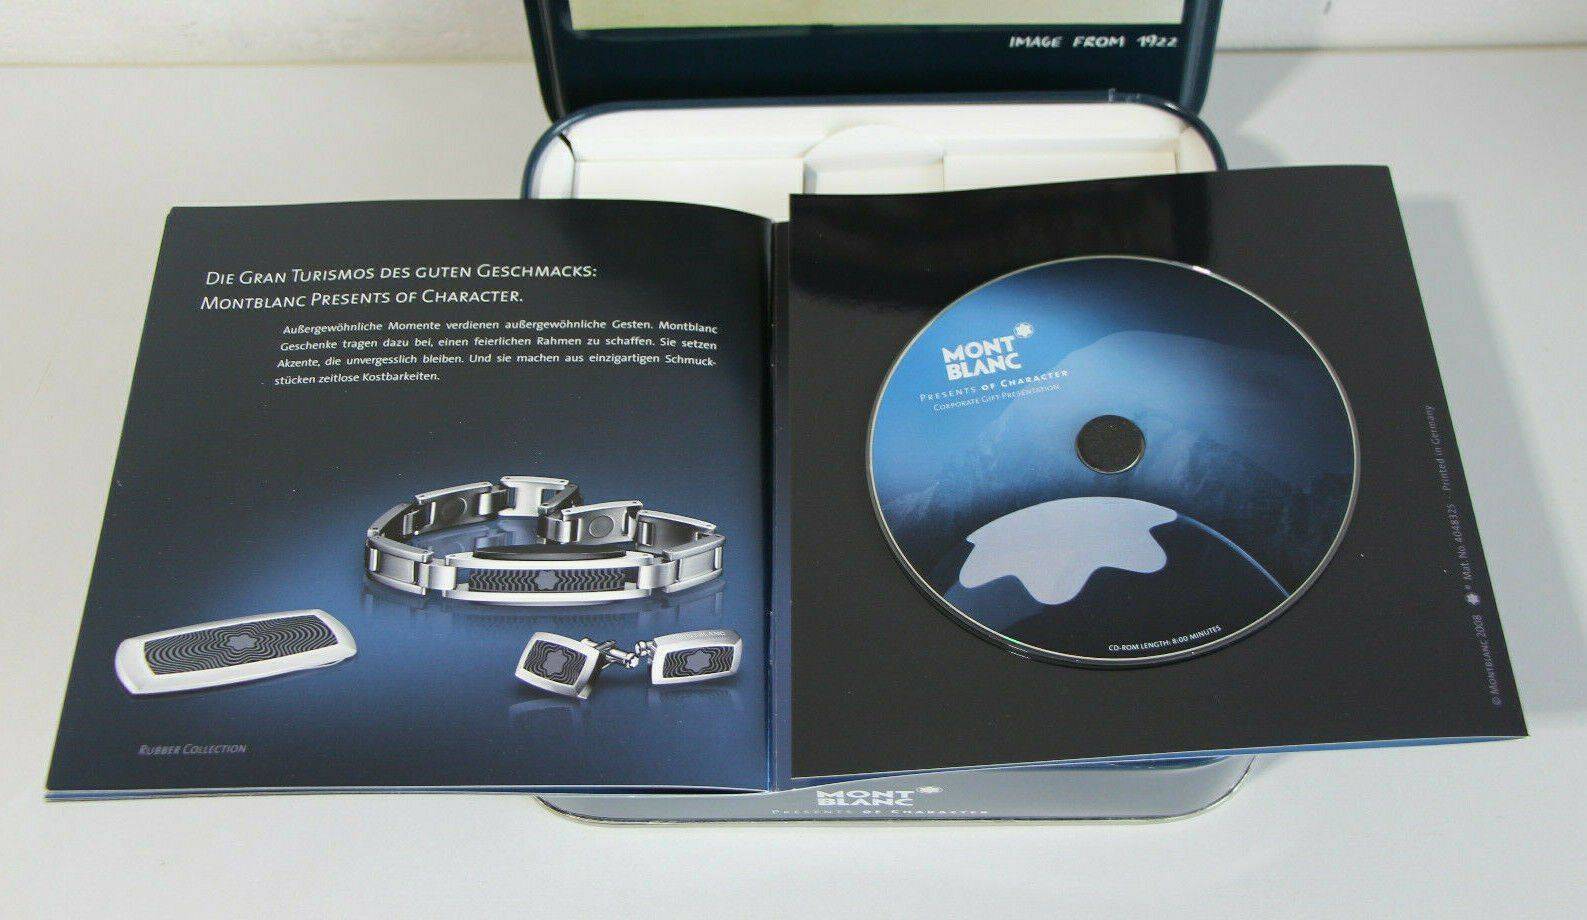 MB caja CD catalogo corp 4.jpg